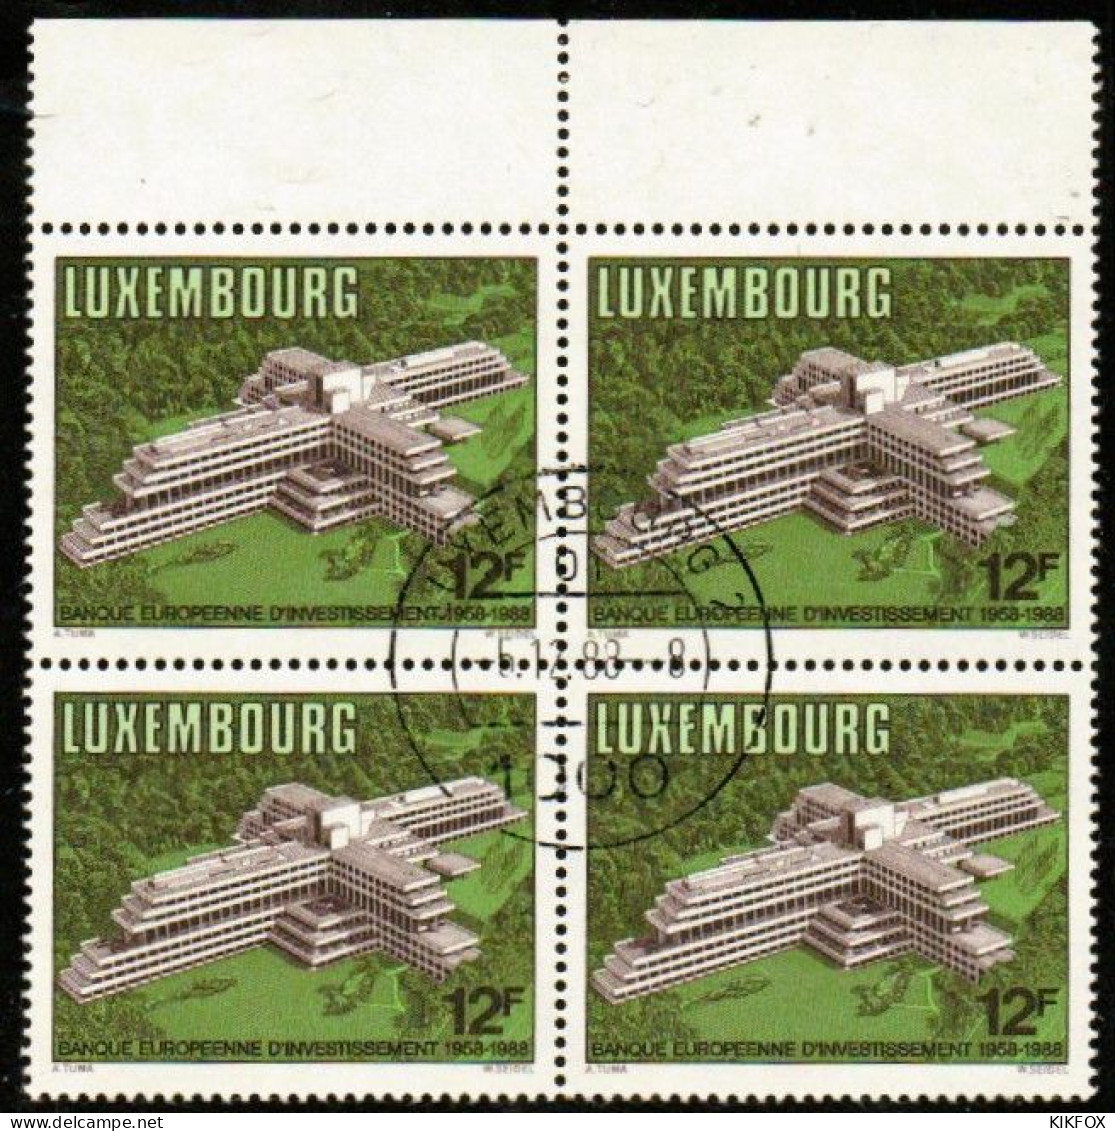 Luxembourg, Luxemburg,1988, MI 1208,YV 1158, VIERERBLOCK,30 JAHRE EUROPÄISCHE INVESTITIONSBANK (EIB),GESTEMPELT,OBLITERE - Oblitérés